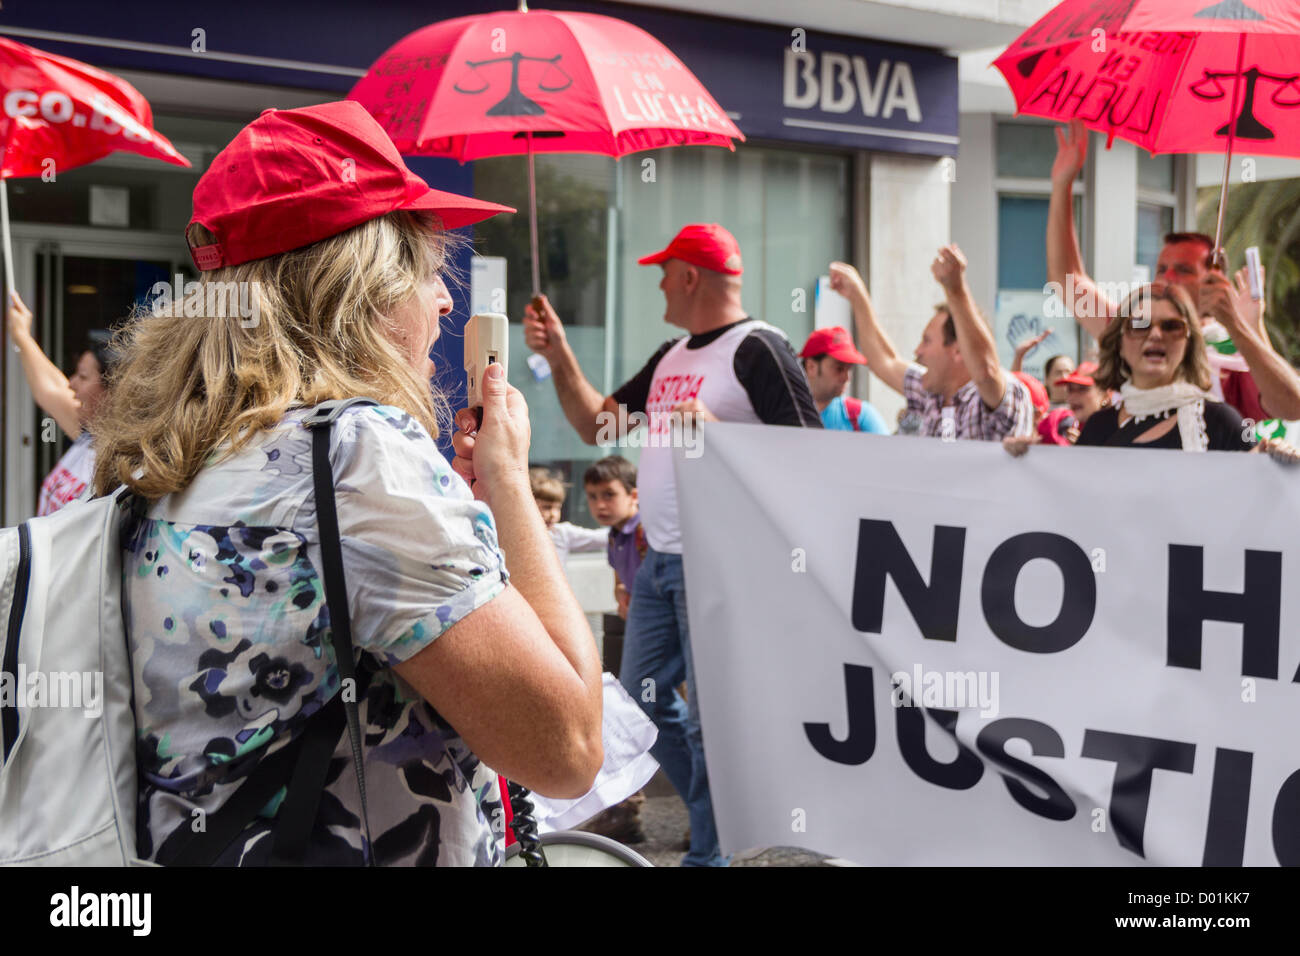 Las Palmas, Gran Canaria, Îles Canaries, Espagne. 14 novembre 2012. Grève générale manifestants passant banque BBVA. Credit : ALANDAWSONPHOTOGRAPHY / Alamy Live News Banque D'Images